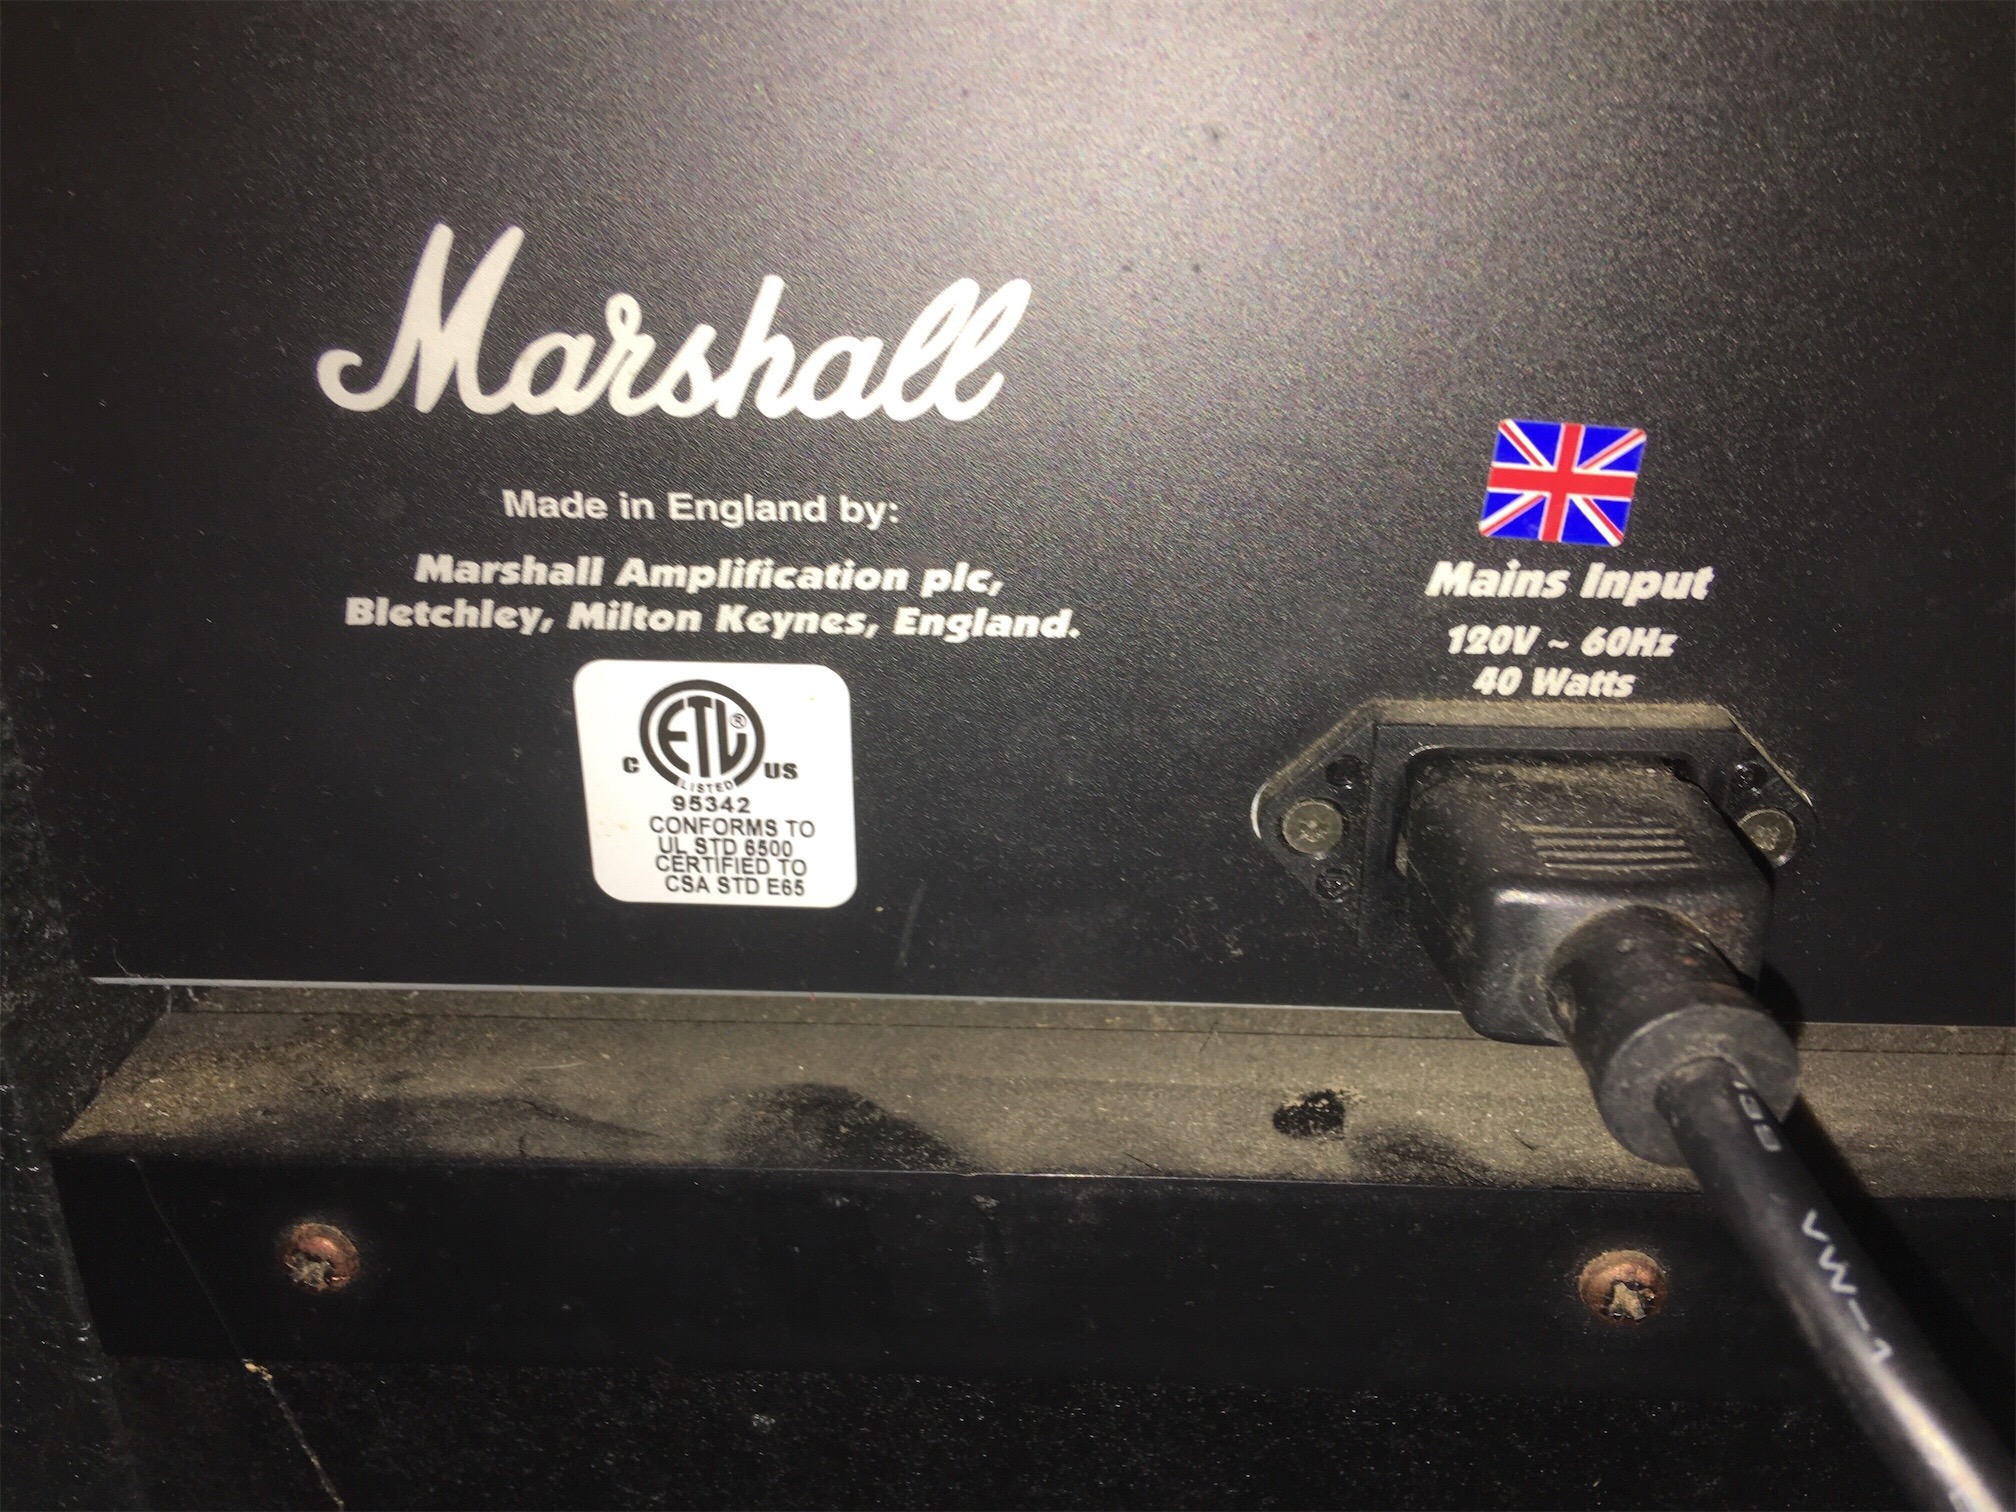 instrumentos musicales - Amplificadores Marshall y vox excelente condiciones